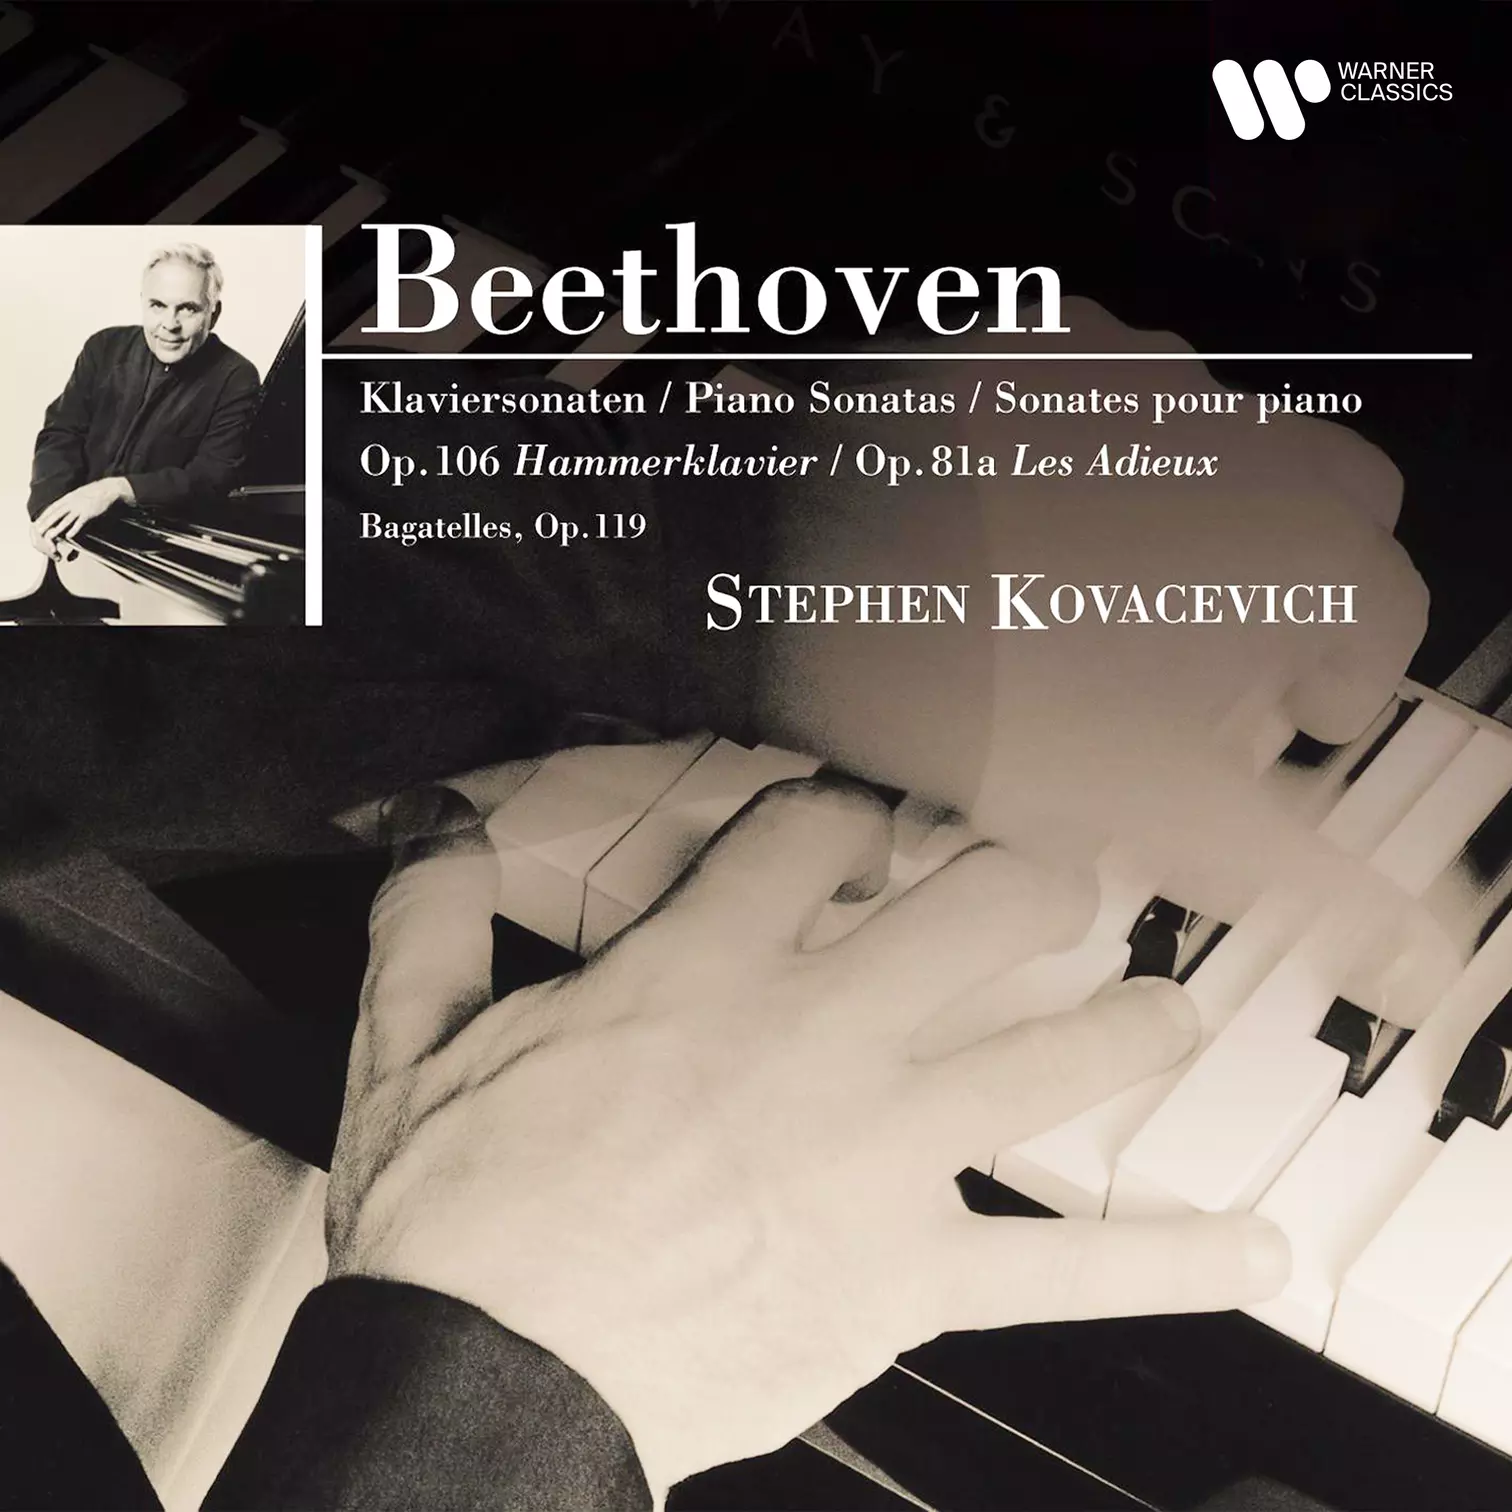 Beethoven: Piano Sonatas Nos. 26 29 “Hammerklavier” | Warner Classics